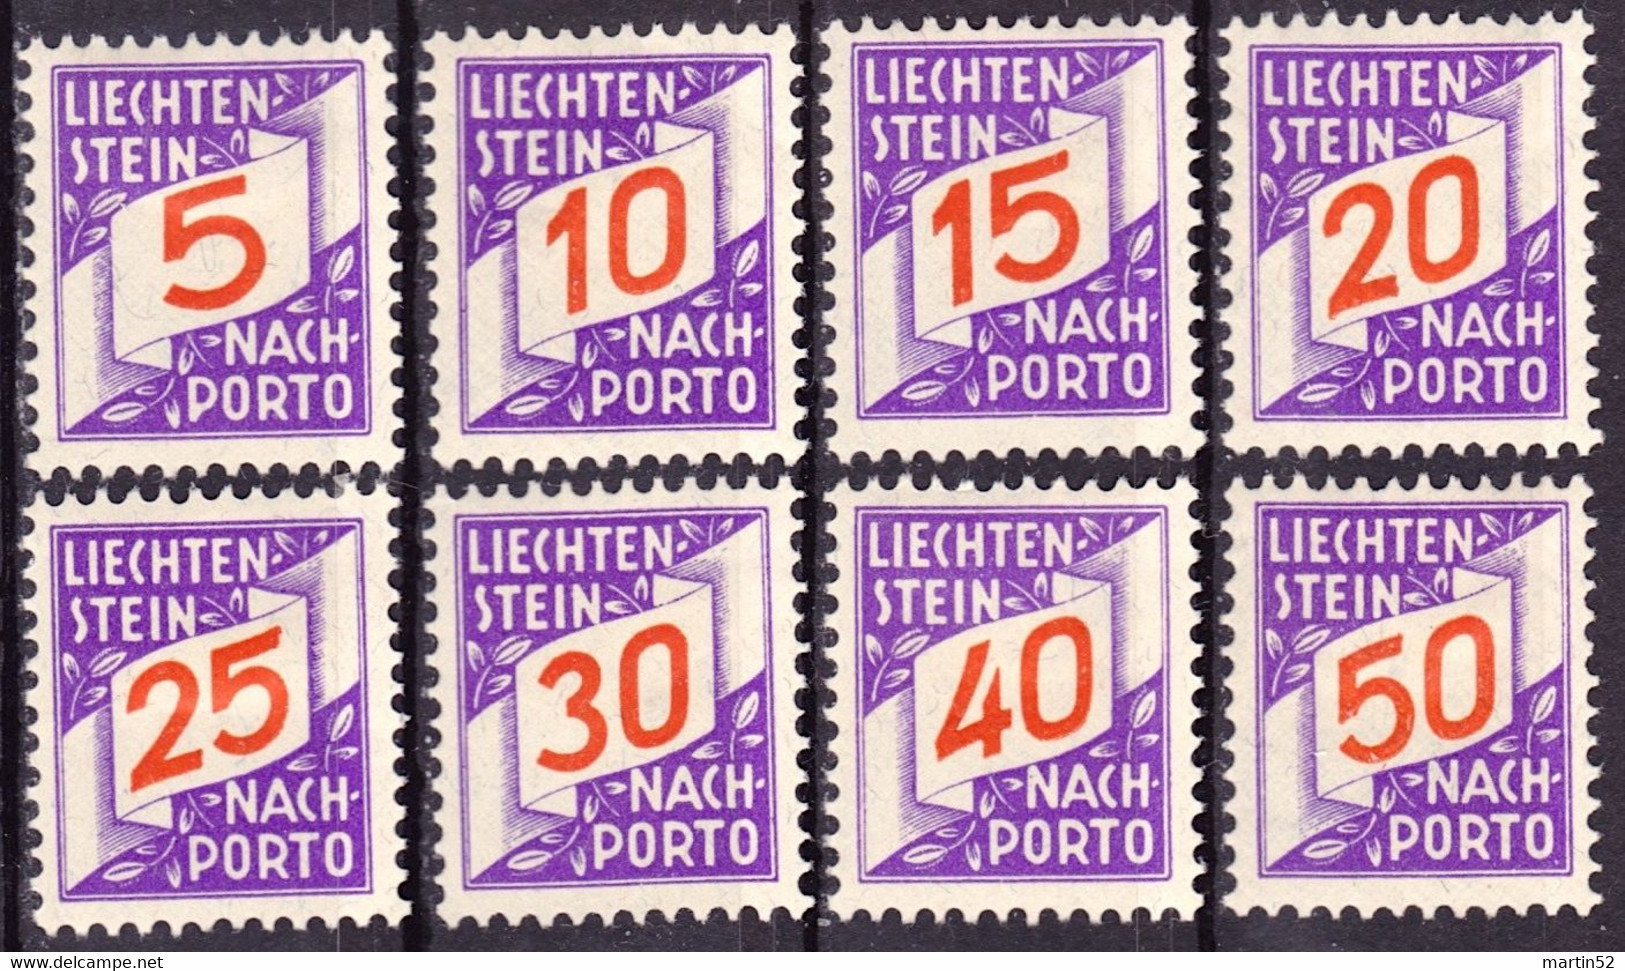 Liechtenstein 1928: ERSTE NACHPORTO-Marken Nr. 13-20 In Schweizer Währung * Falz Charnière MH (Zu CHF 135.00 -50%) - Postage Due